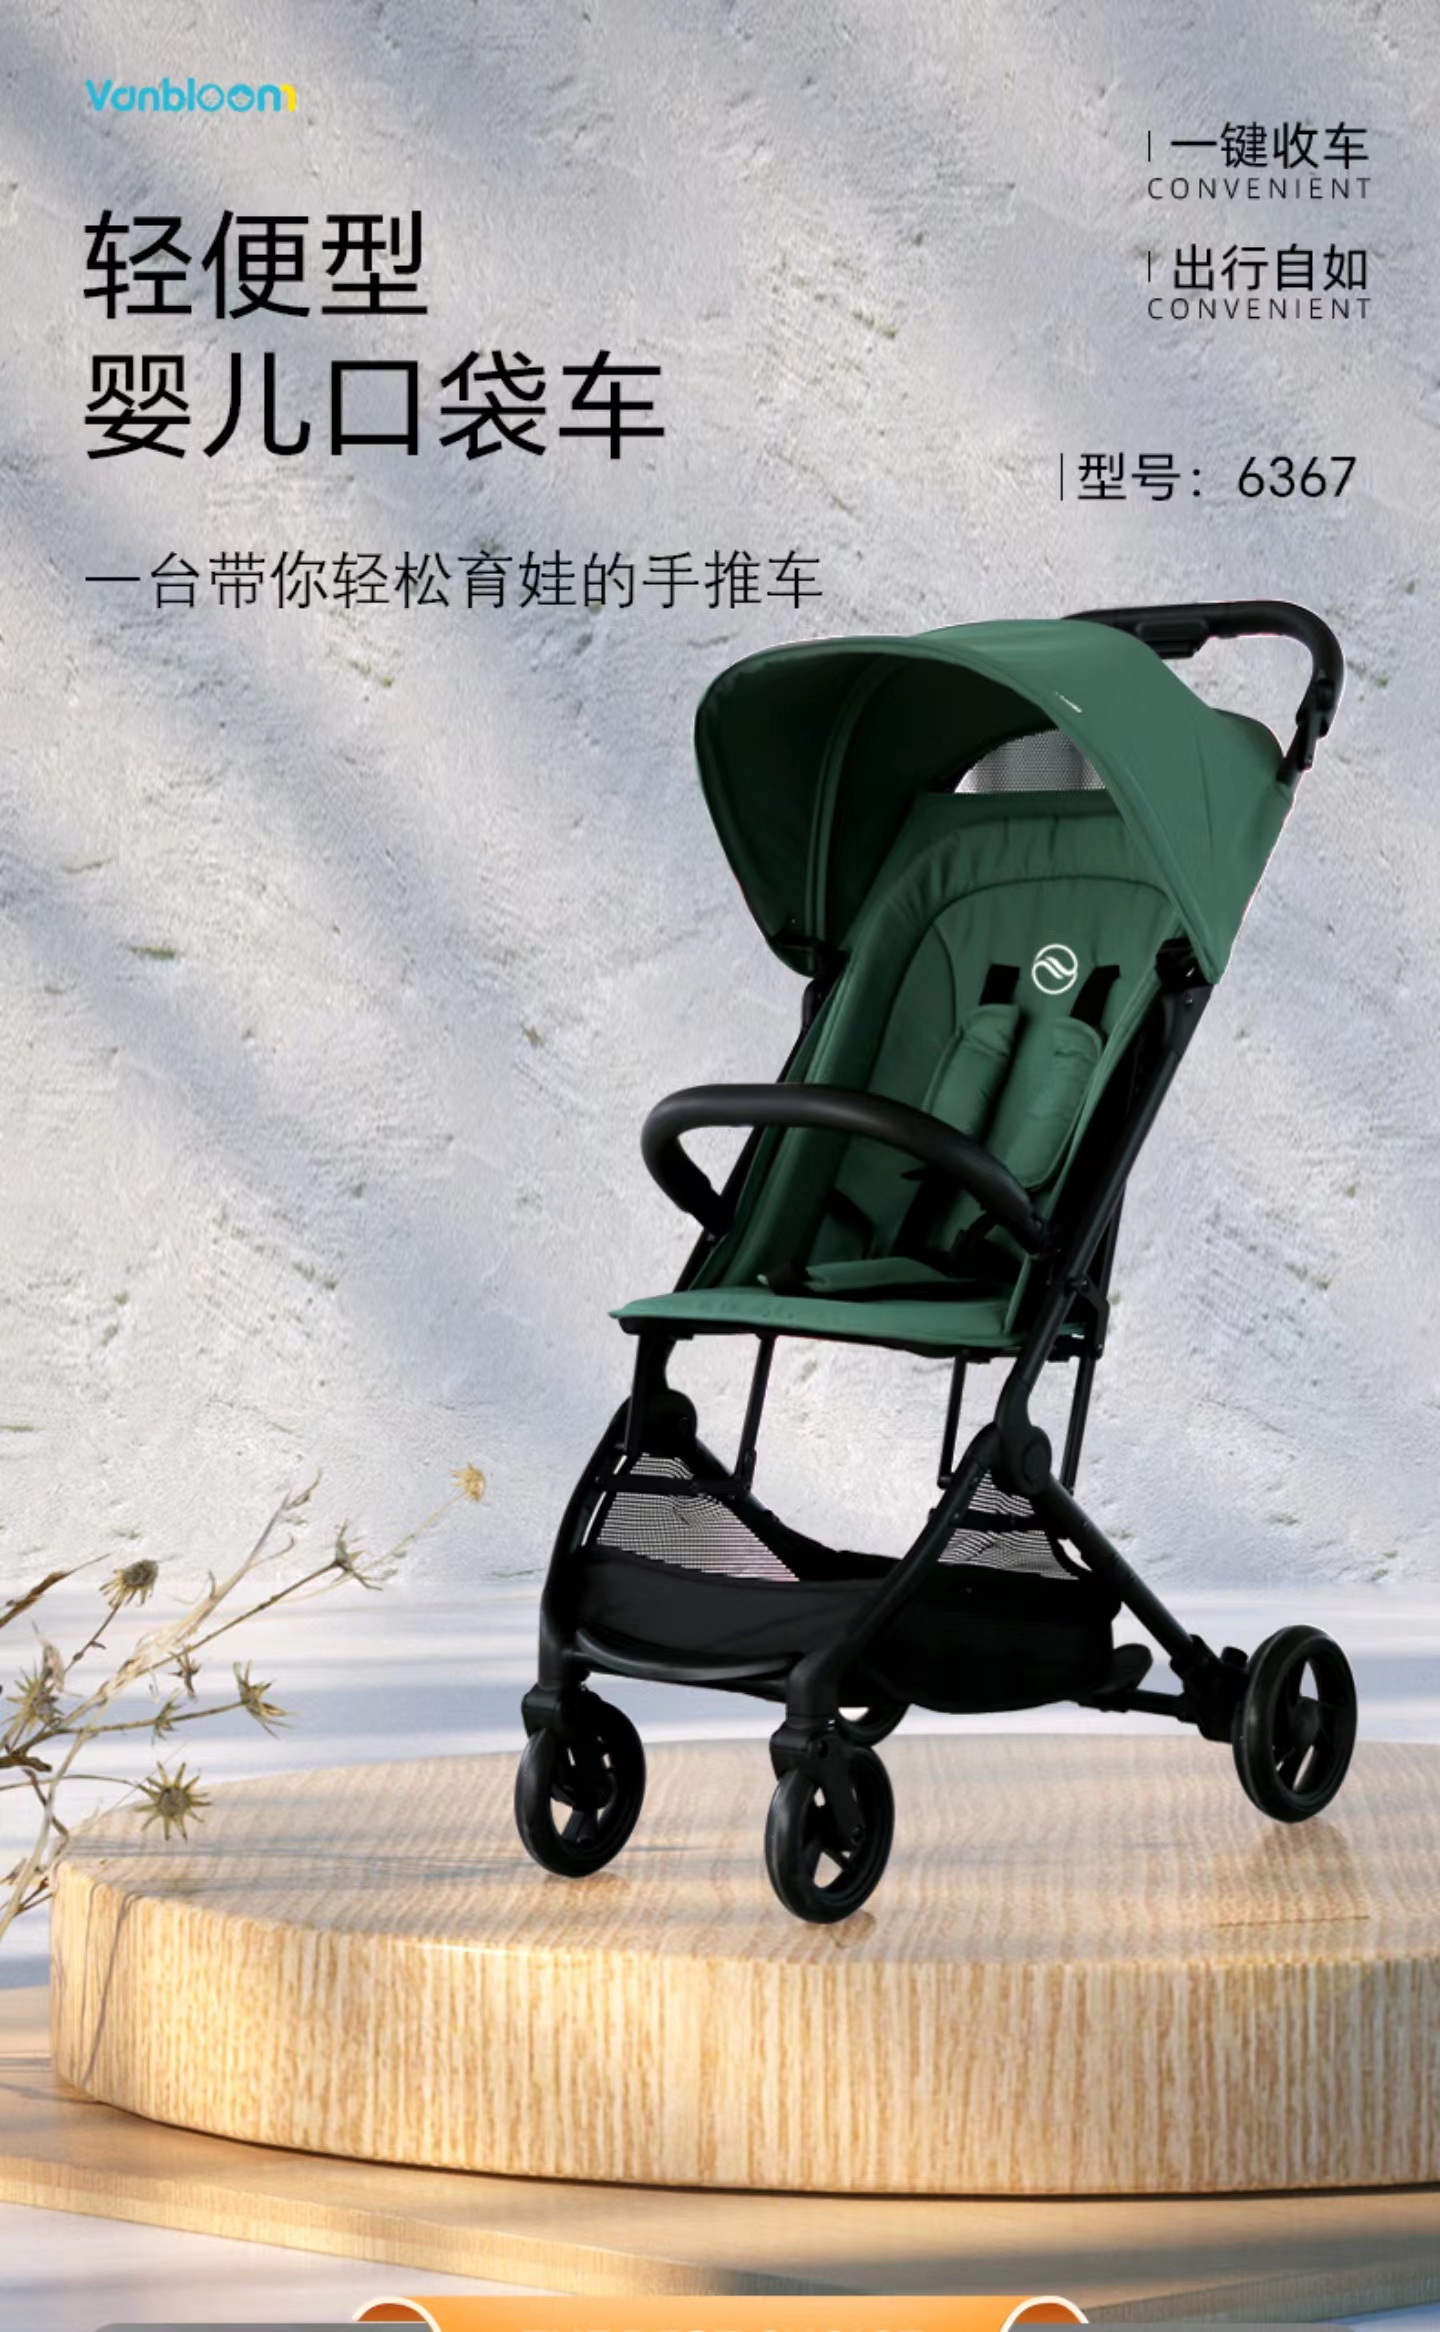 VB口袋车一件收车推车伞车婴儿宝宝儿童轻便折叠可坐便携式简易式